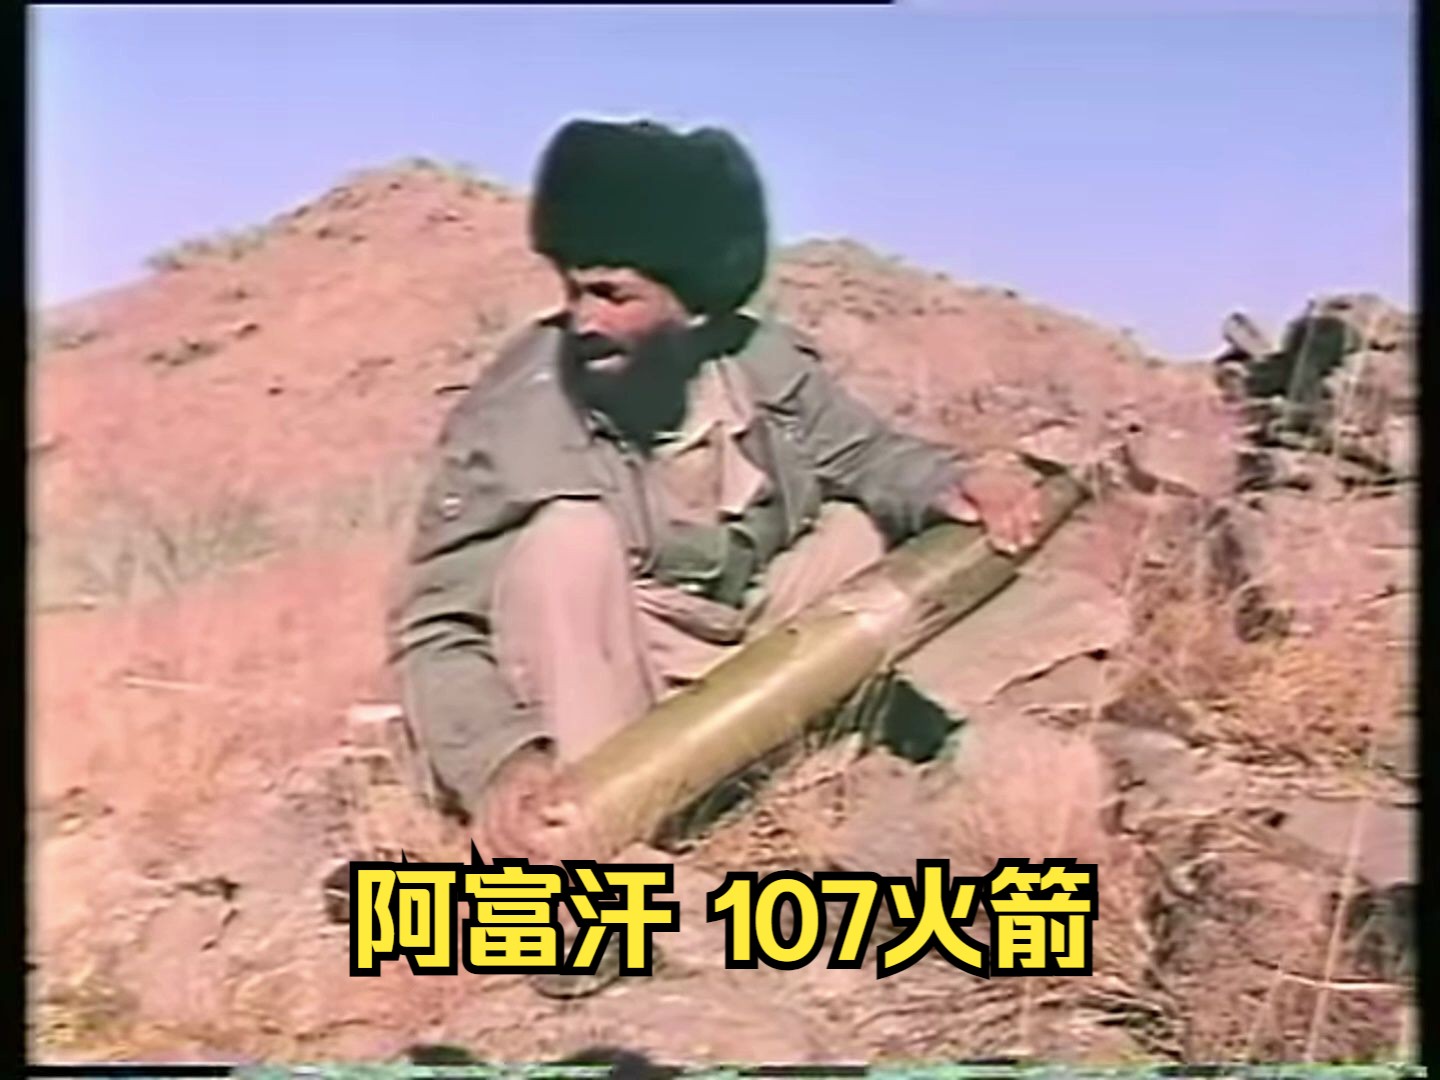 80年代阿富汗游击队使用107火打击苏军据点